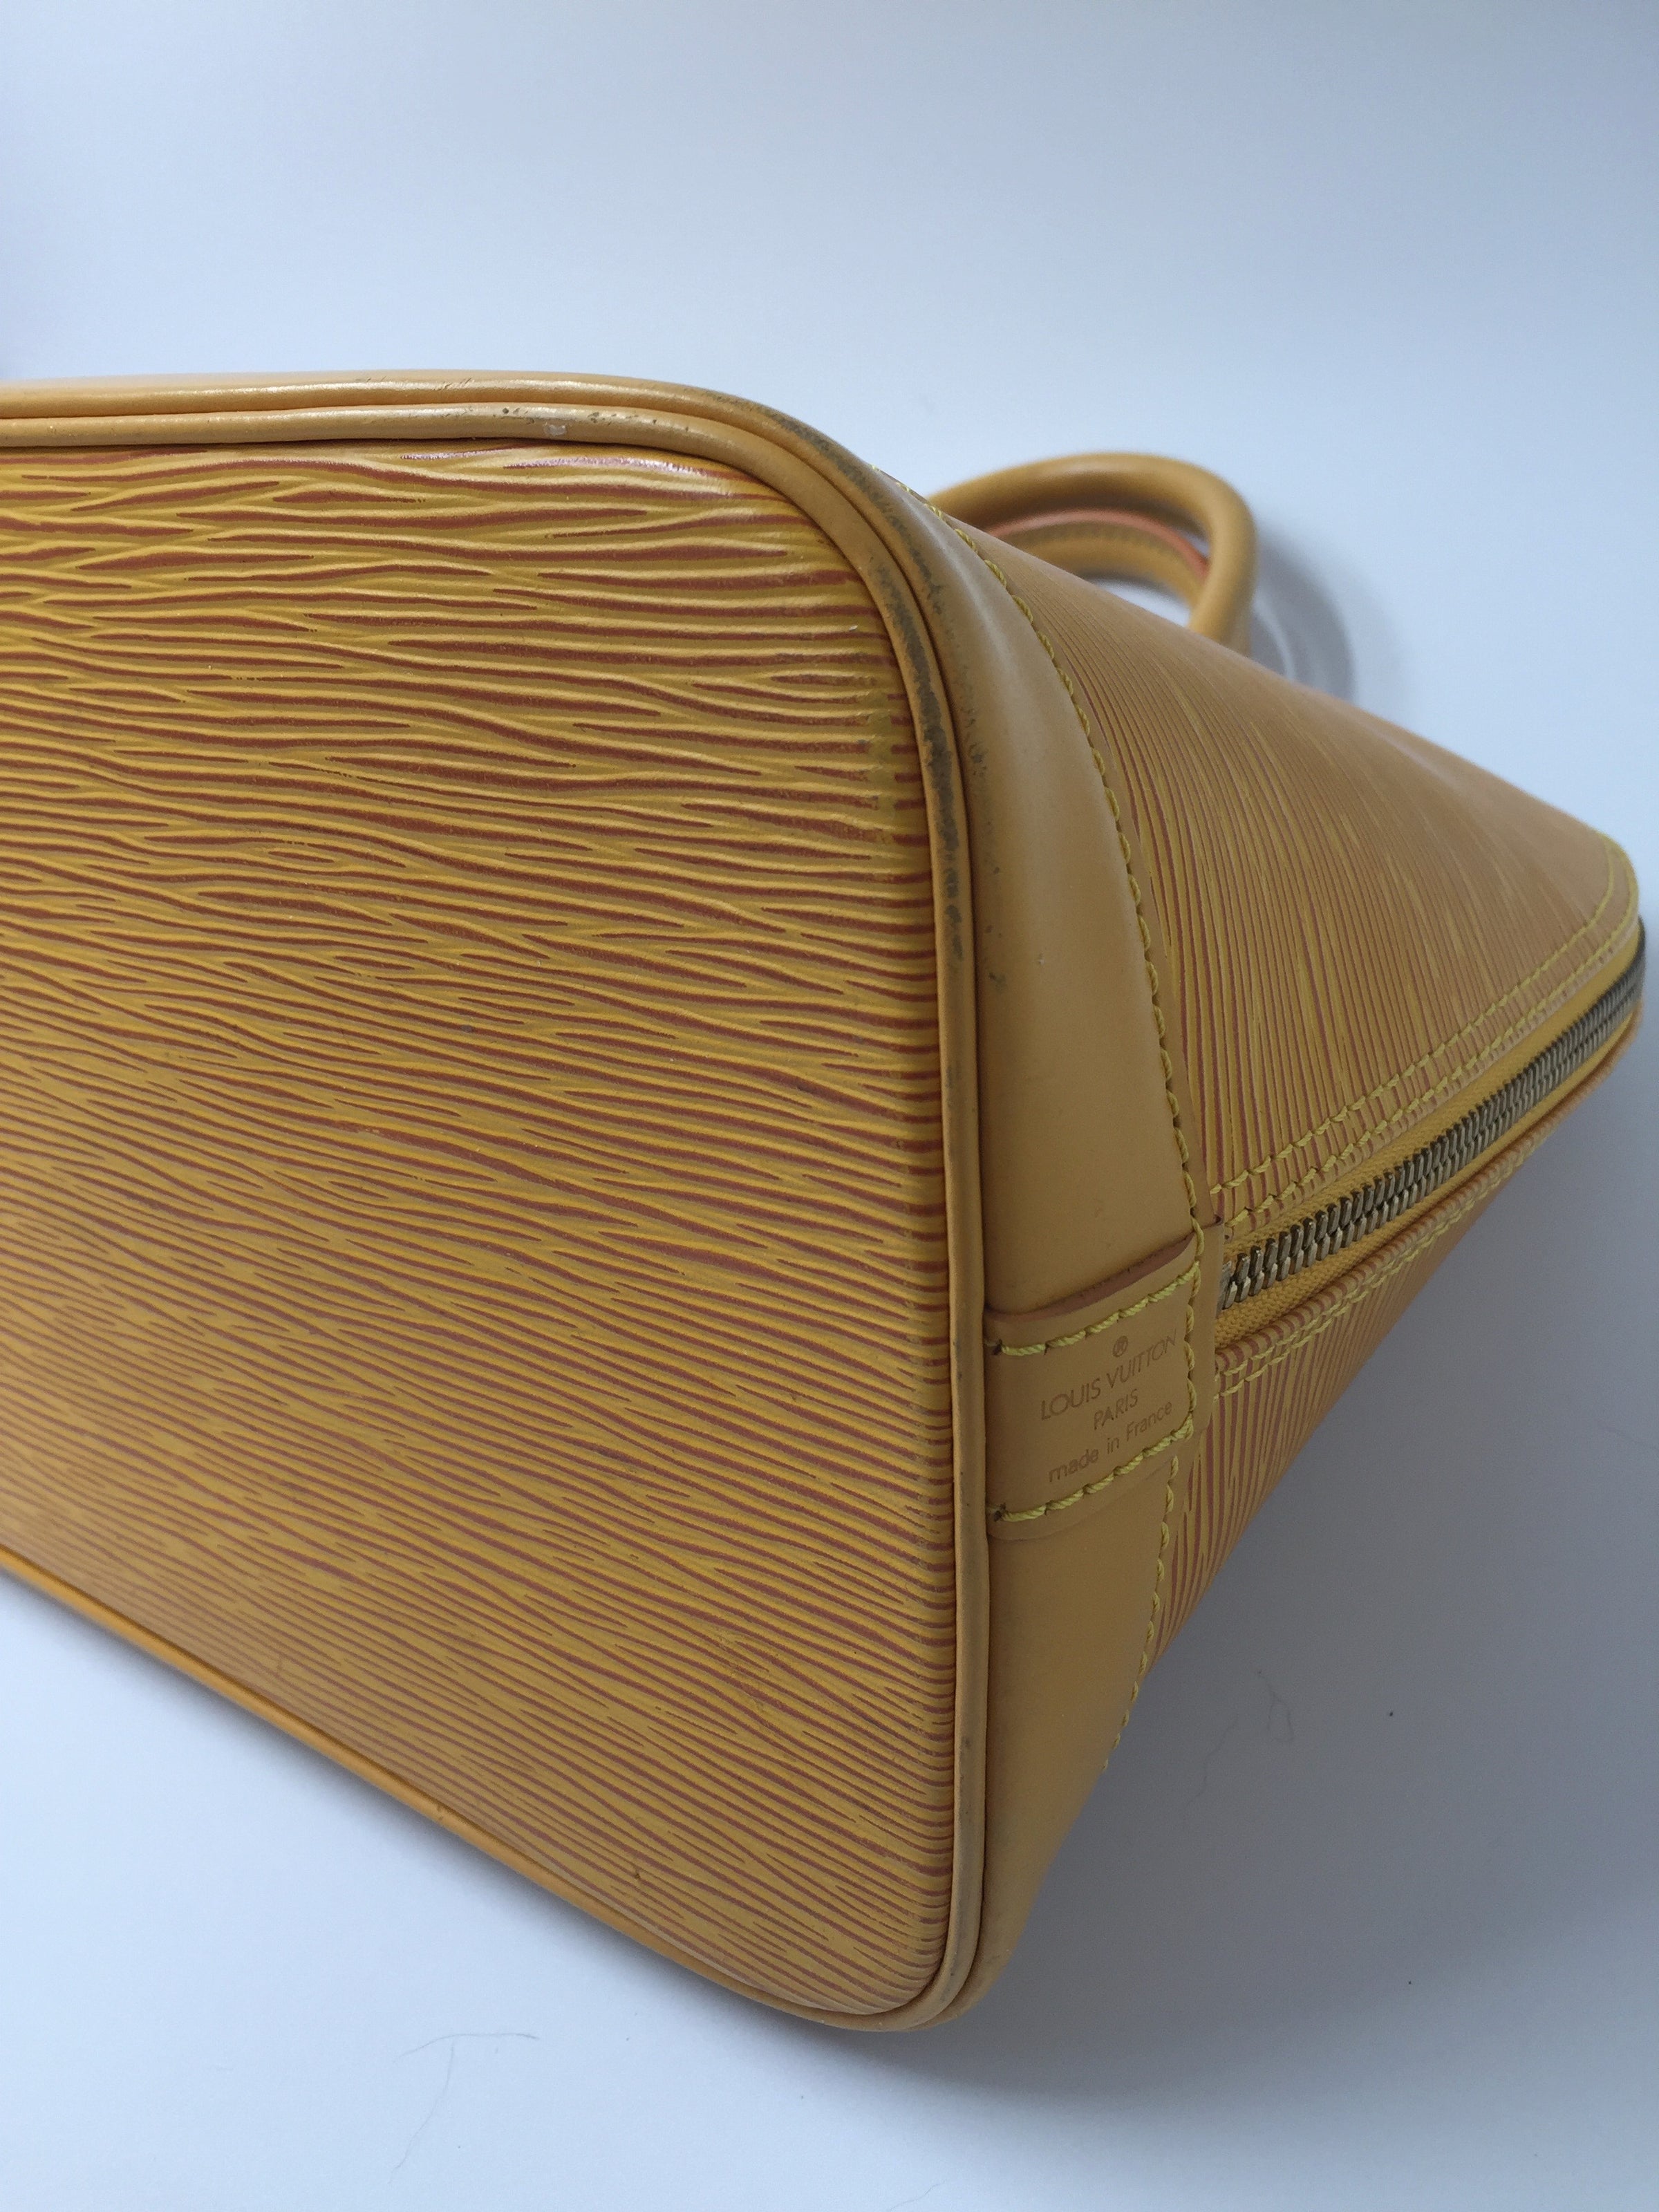 Louis Vuitton Alma Handbag Yellow Epi Leather M52149 – Timeless